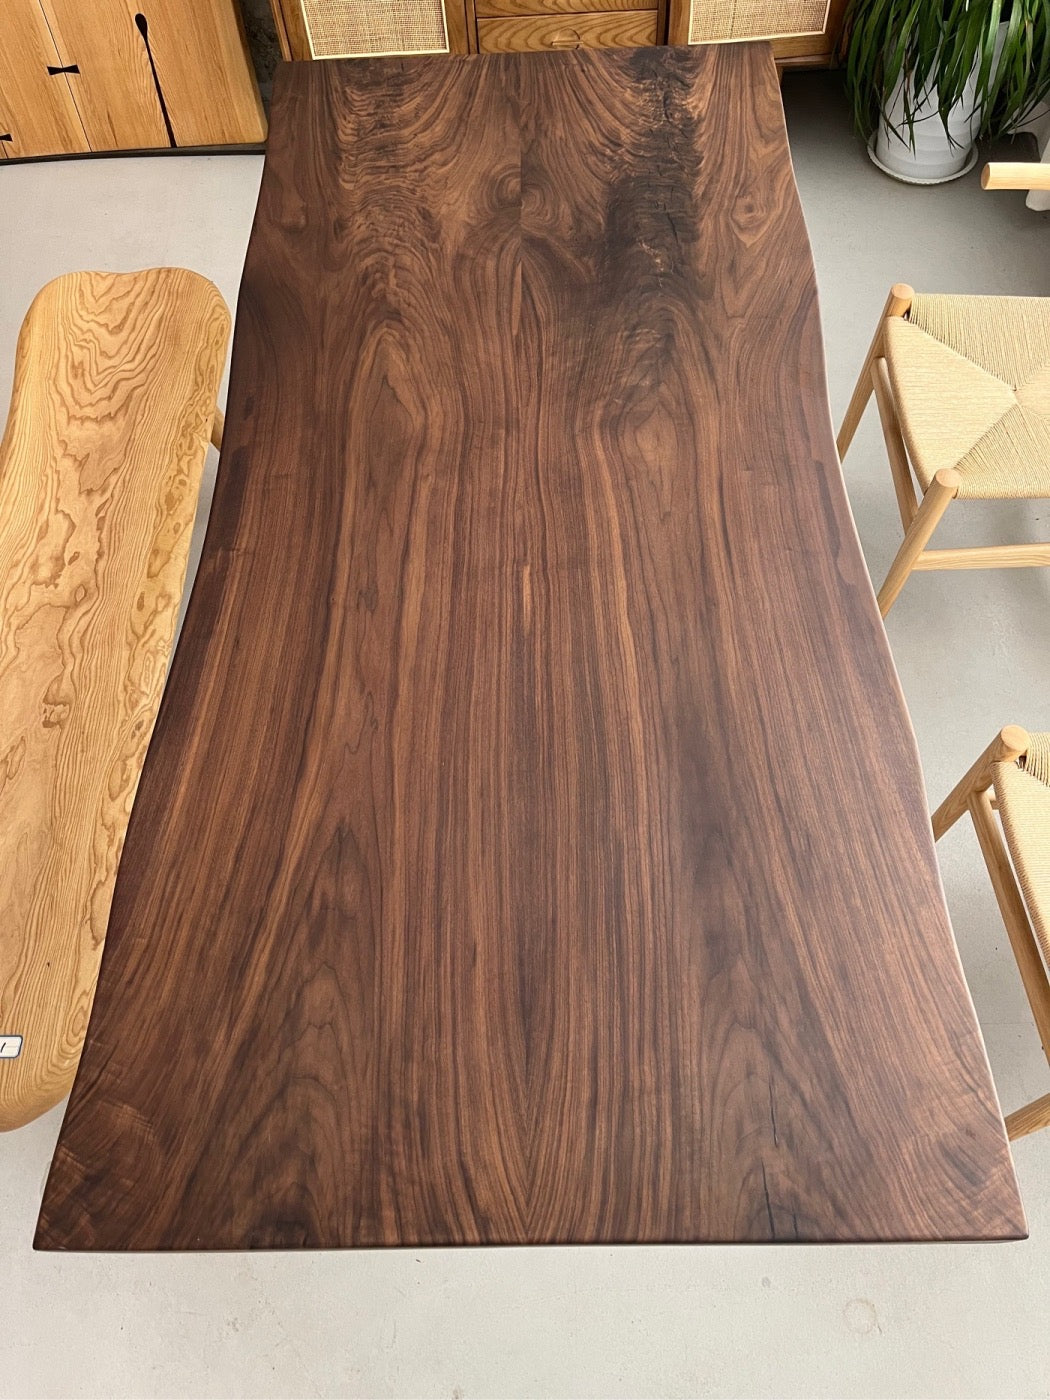 لوح الجوز الأمريكي الأسود، لوح الخشب ذو الحافة الحية، طاولة فريدة من نوعها